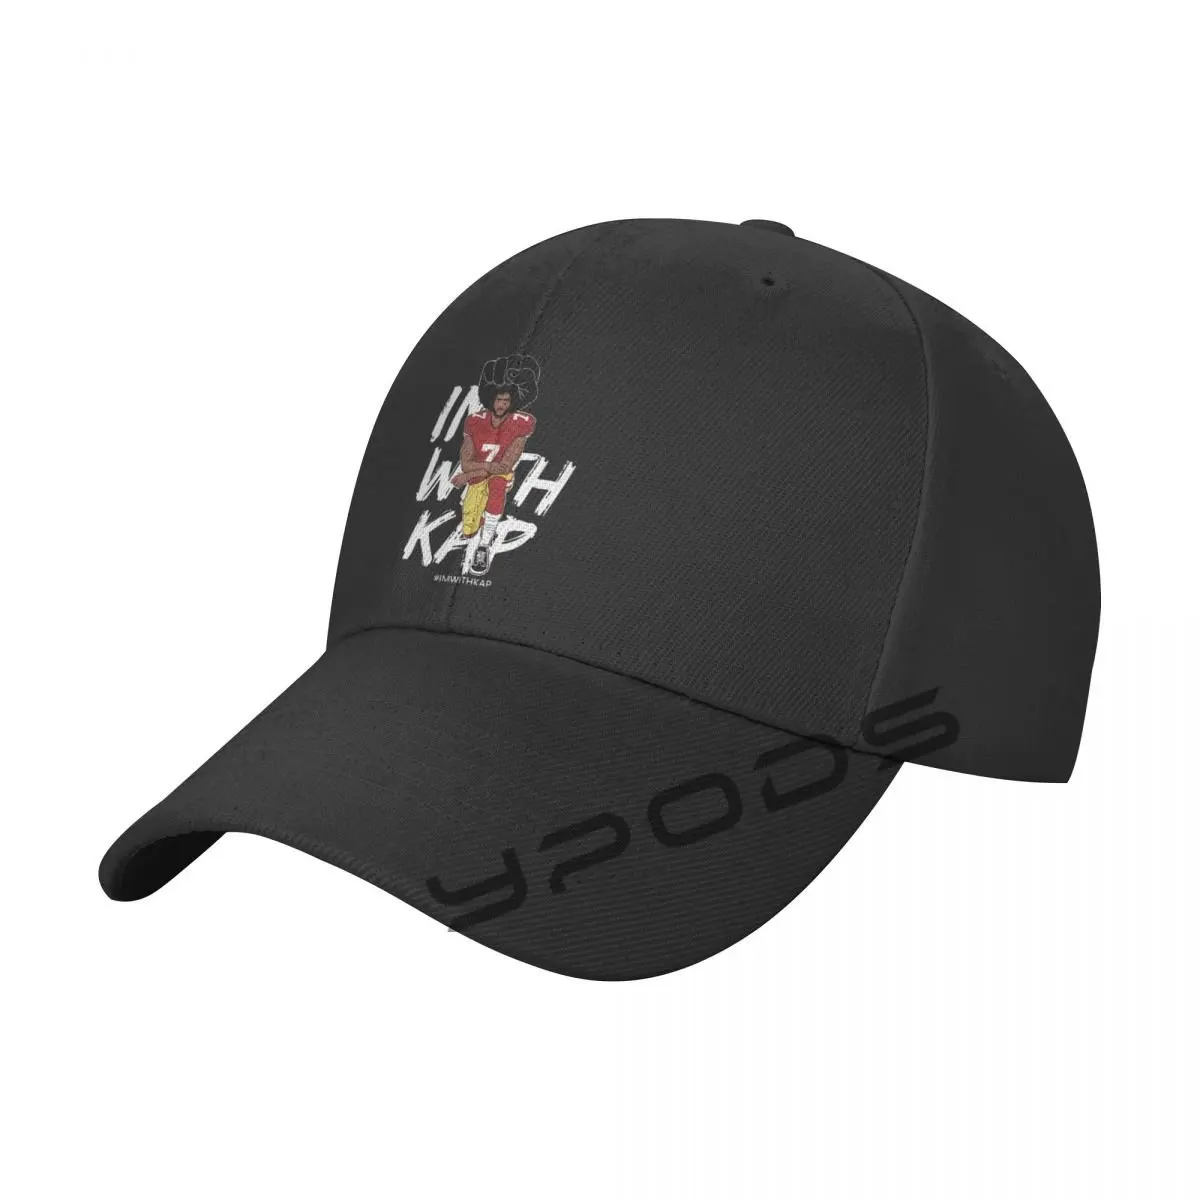 

ImWithKap Kap Kneeling Kaepernick Baseball Cap Solid Color Fashion Adjustable Leisure Caps Men Women Hats Caps